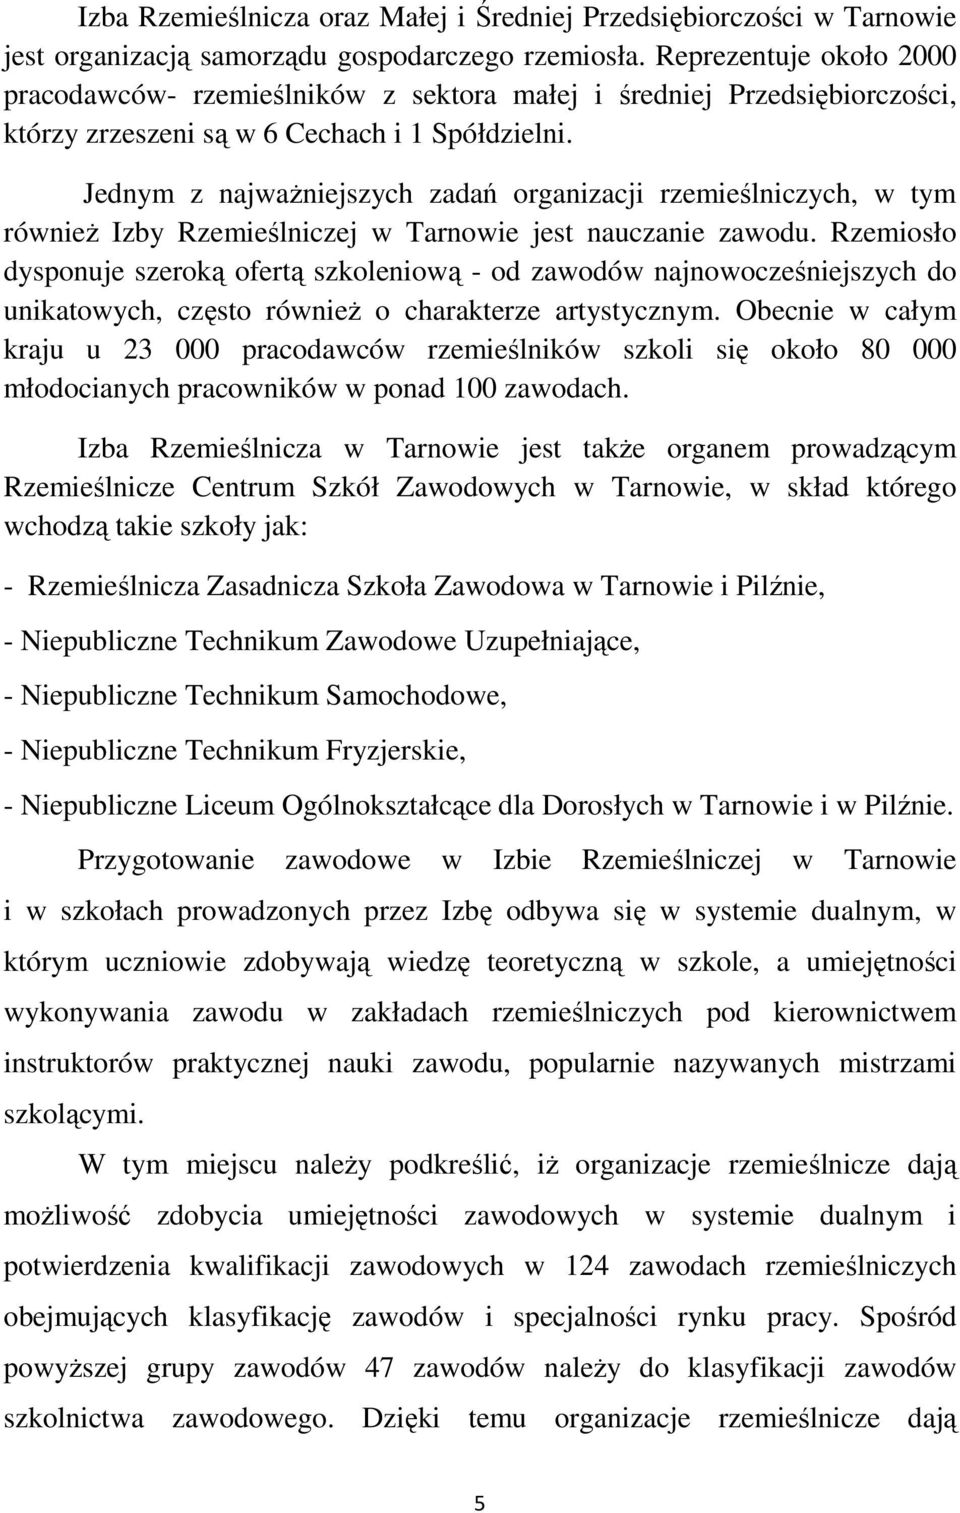 Jednym z najważniejszych zadań organizacji rzemieślniczych, w tym również Izby Rzemieślniczej w Tarnowie jest nauczanie zawodu.